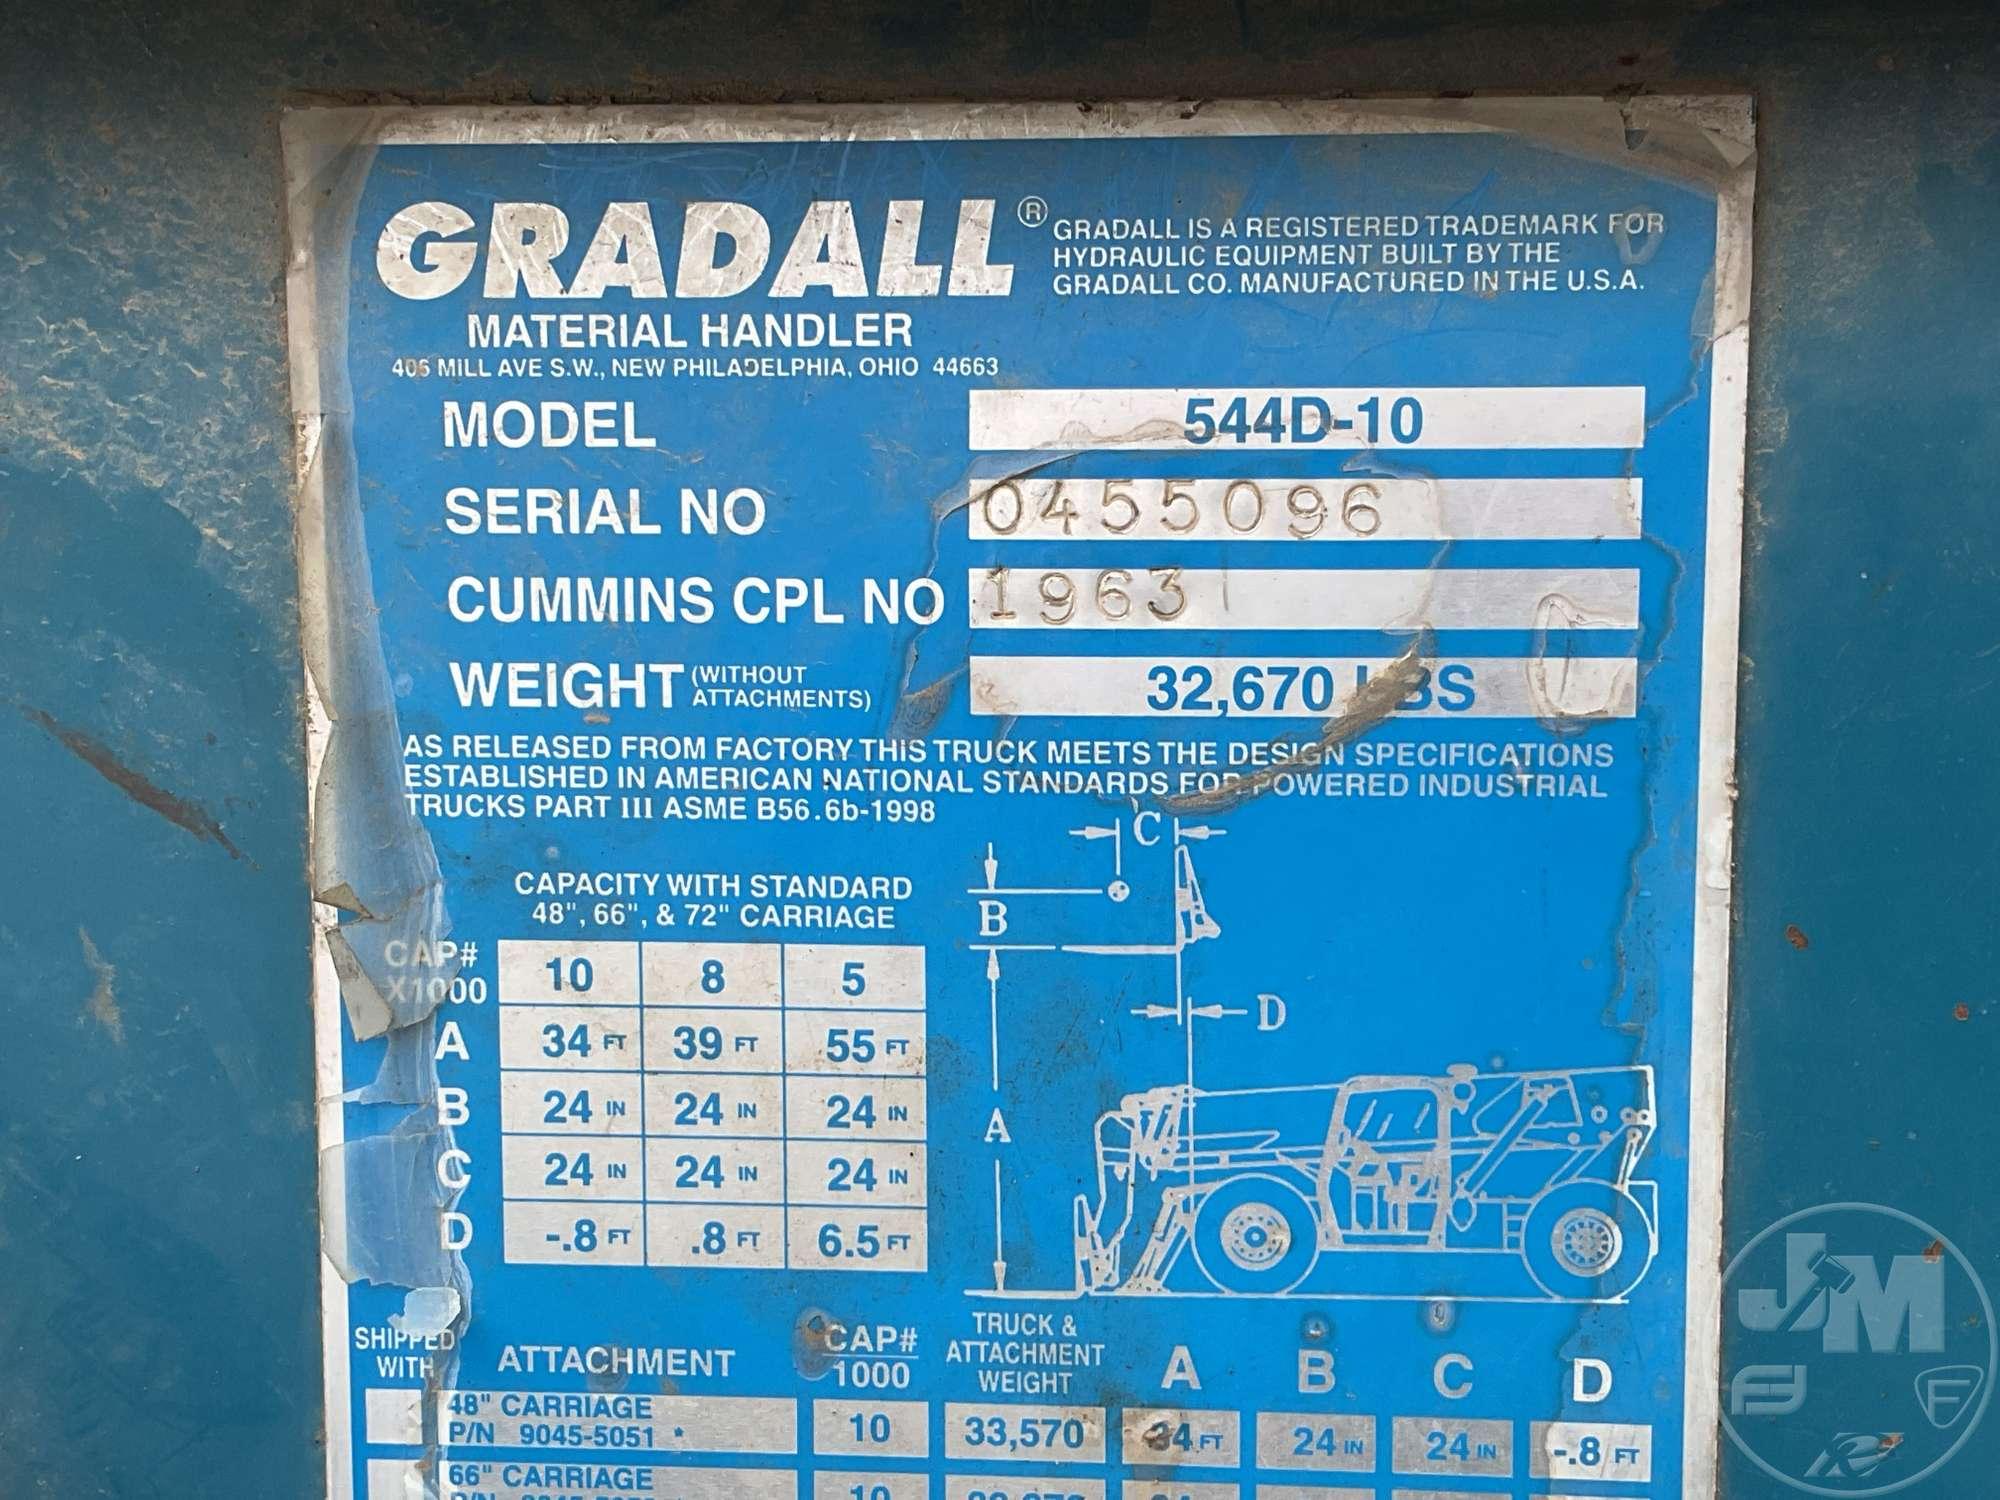 GRADALL 544D-10 TELESCOPIC FORKLIFT SN: 0455096